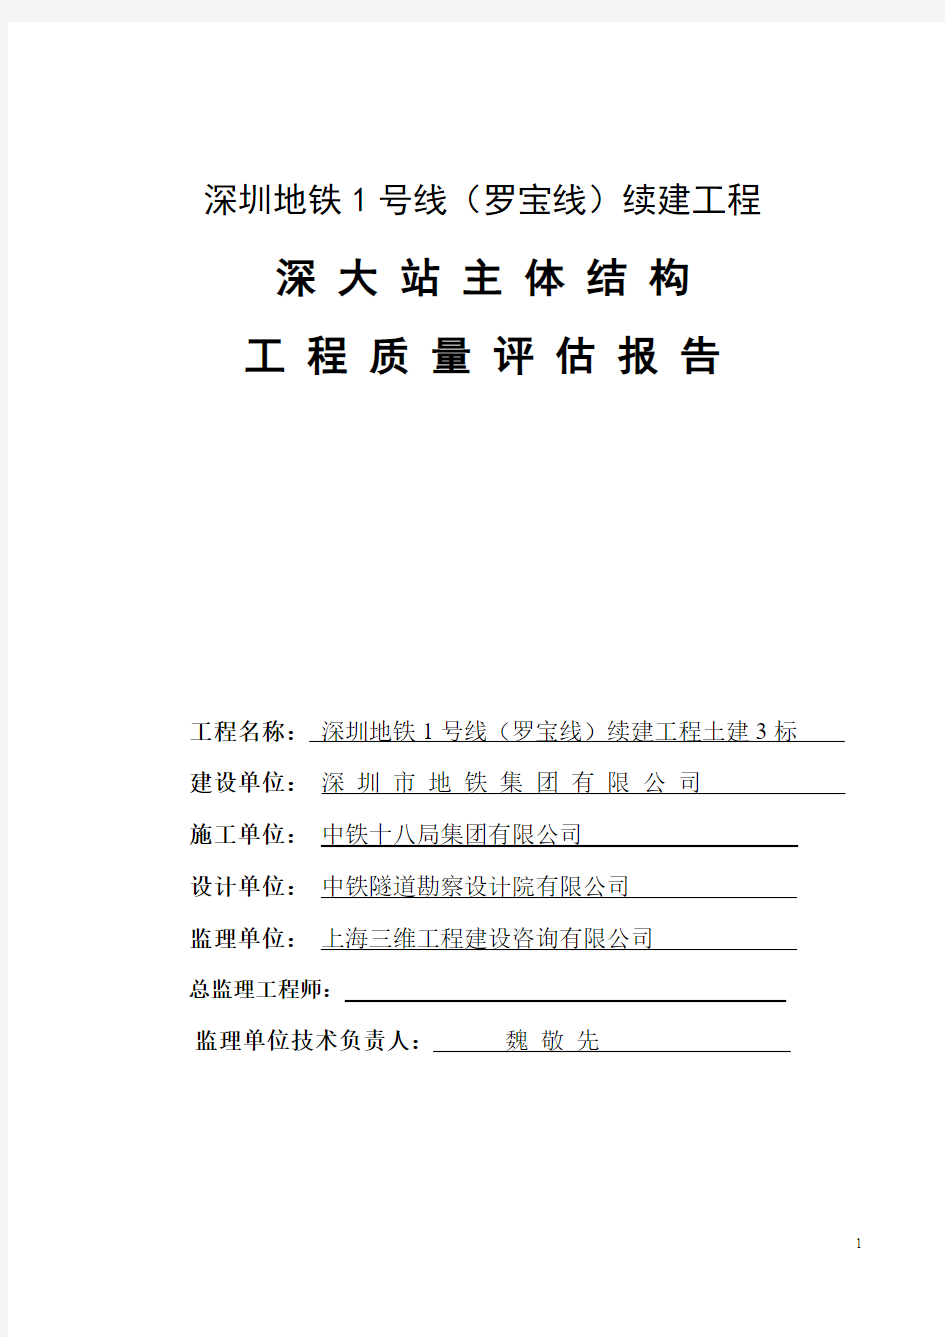 深圳地铁1号线续建工程土建3标深大站主体结构质量评估报告20090706(主体结构)ok